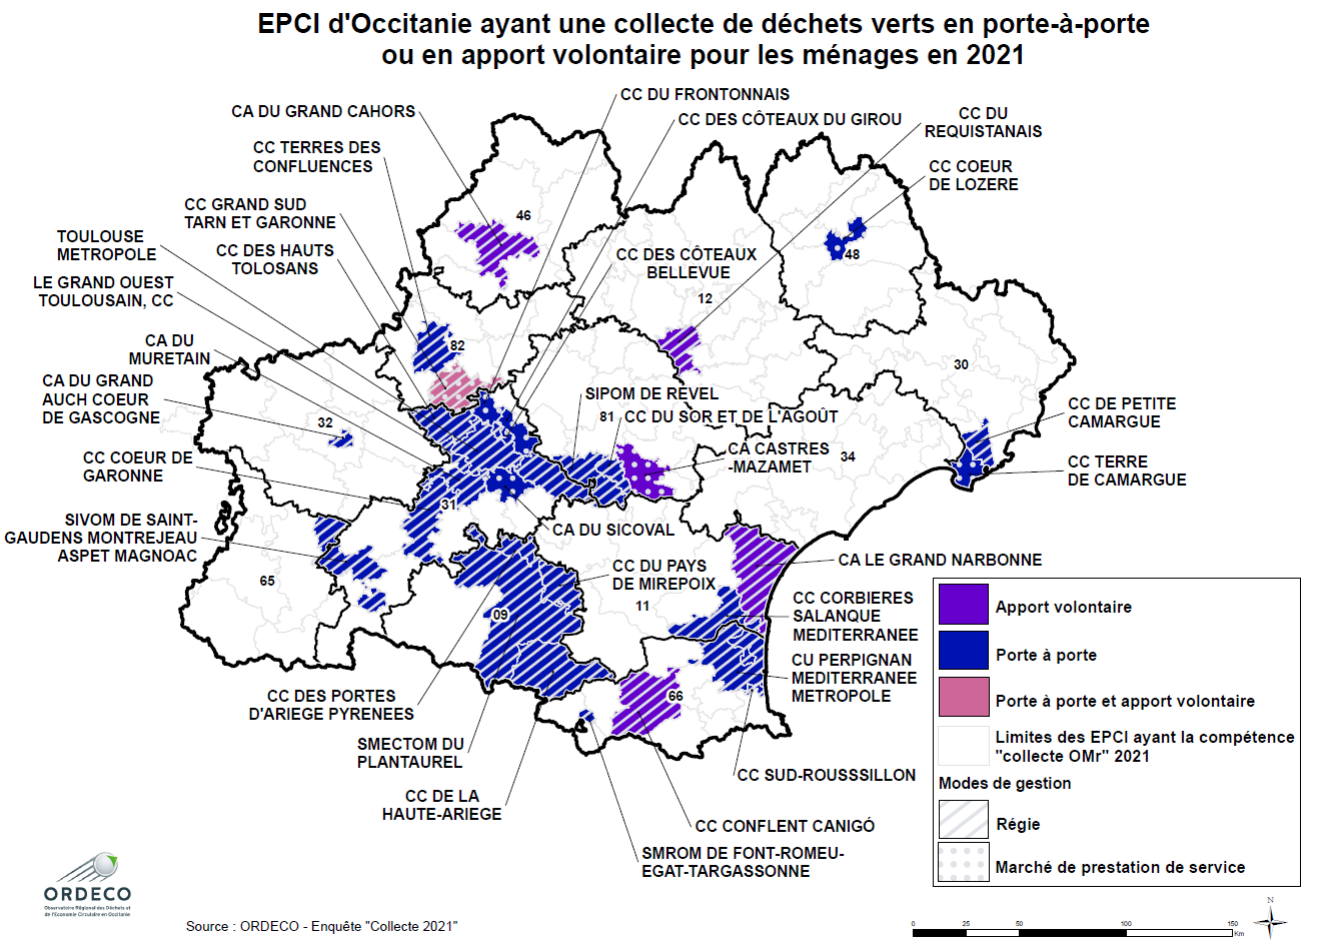 EPCI d'Occitanie ayant une collecte de déchets verts en porte-à-porte ou en apport volontaire pour les ménages en 2021